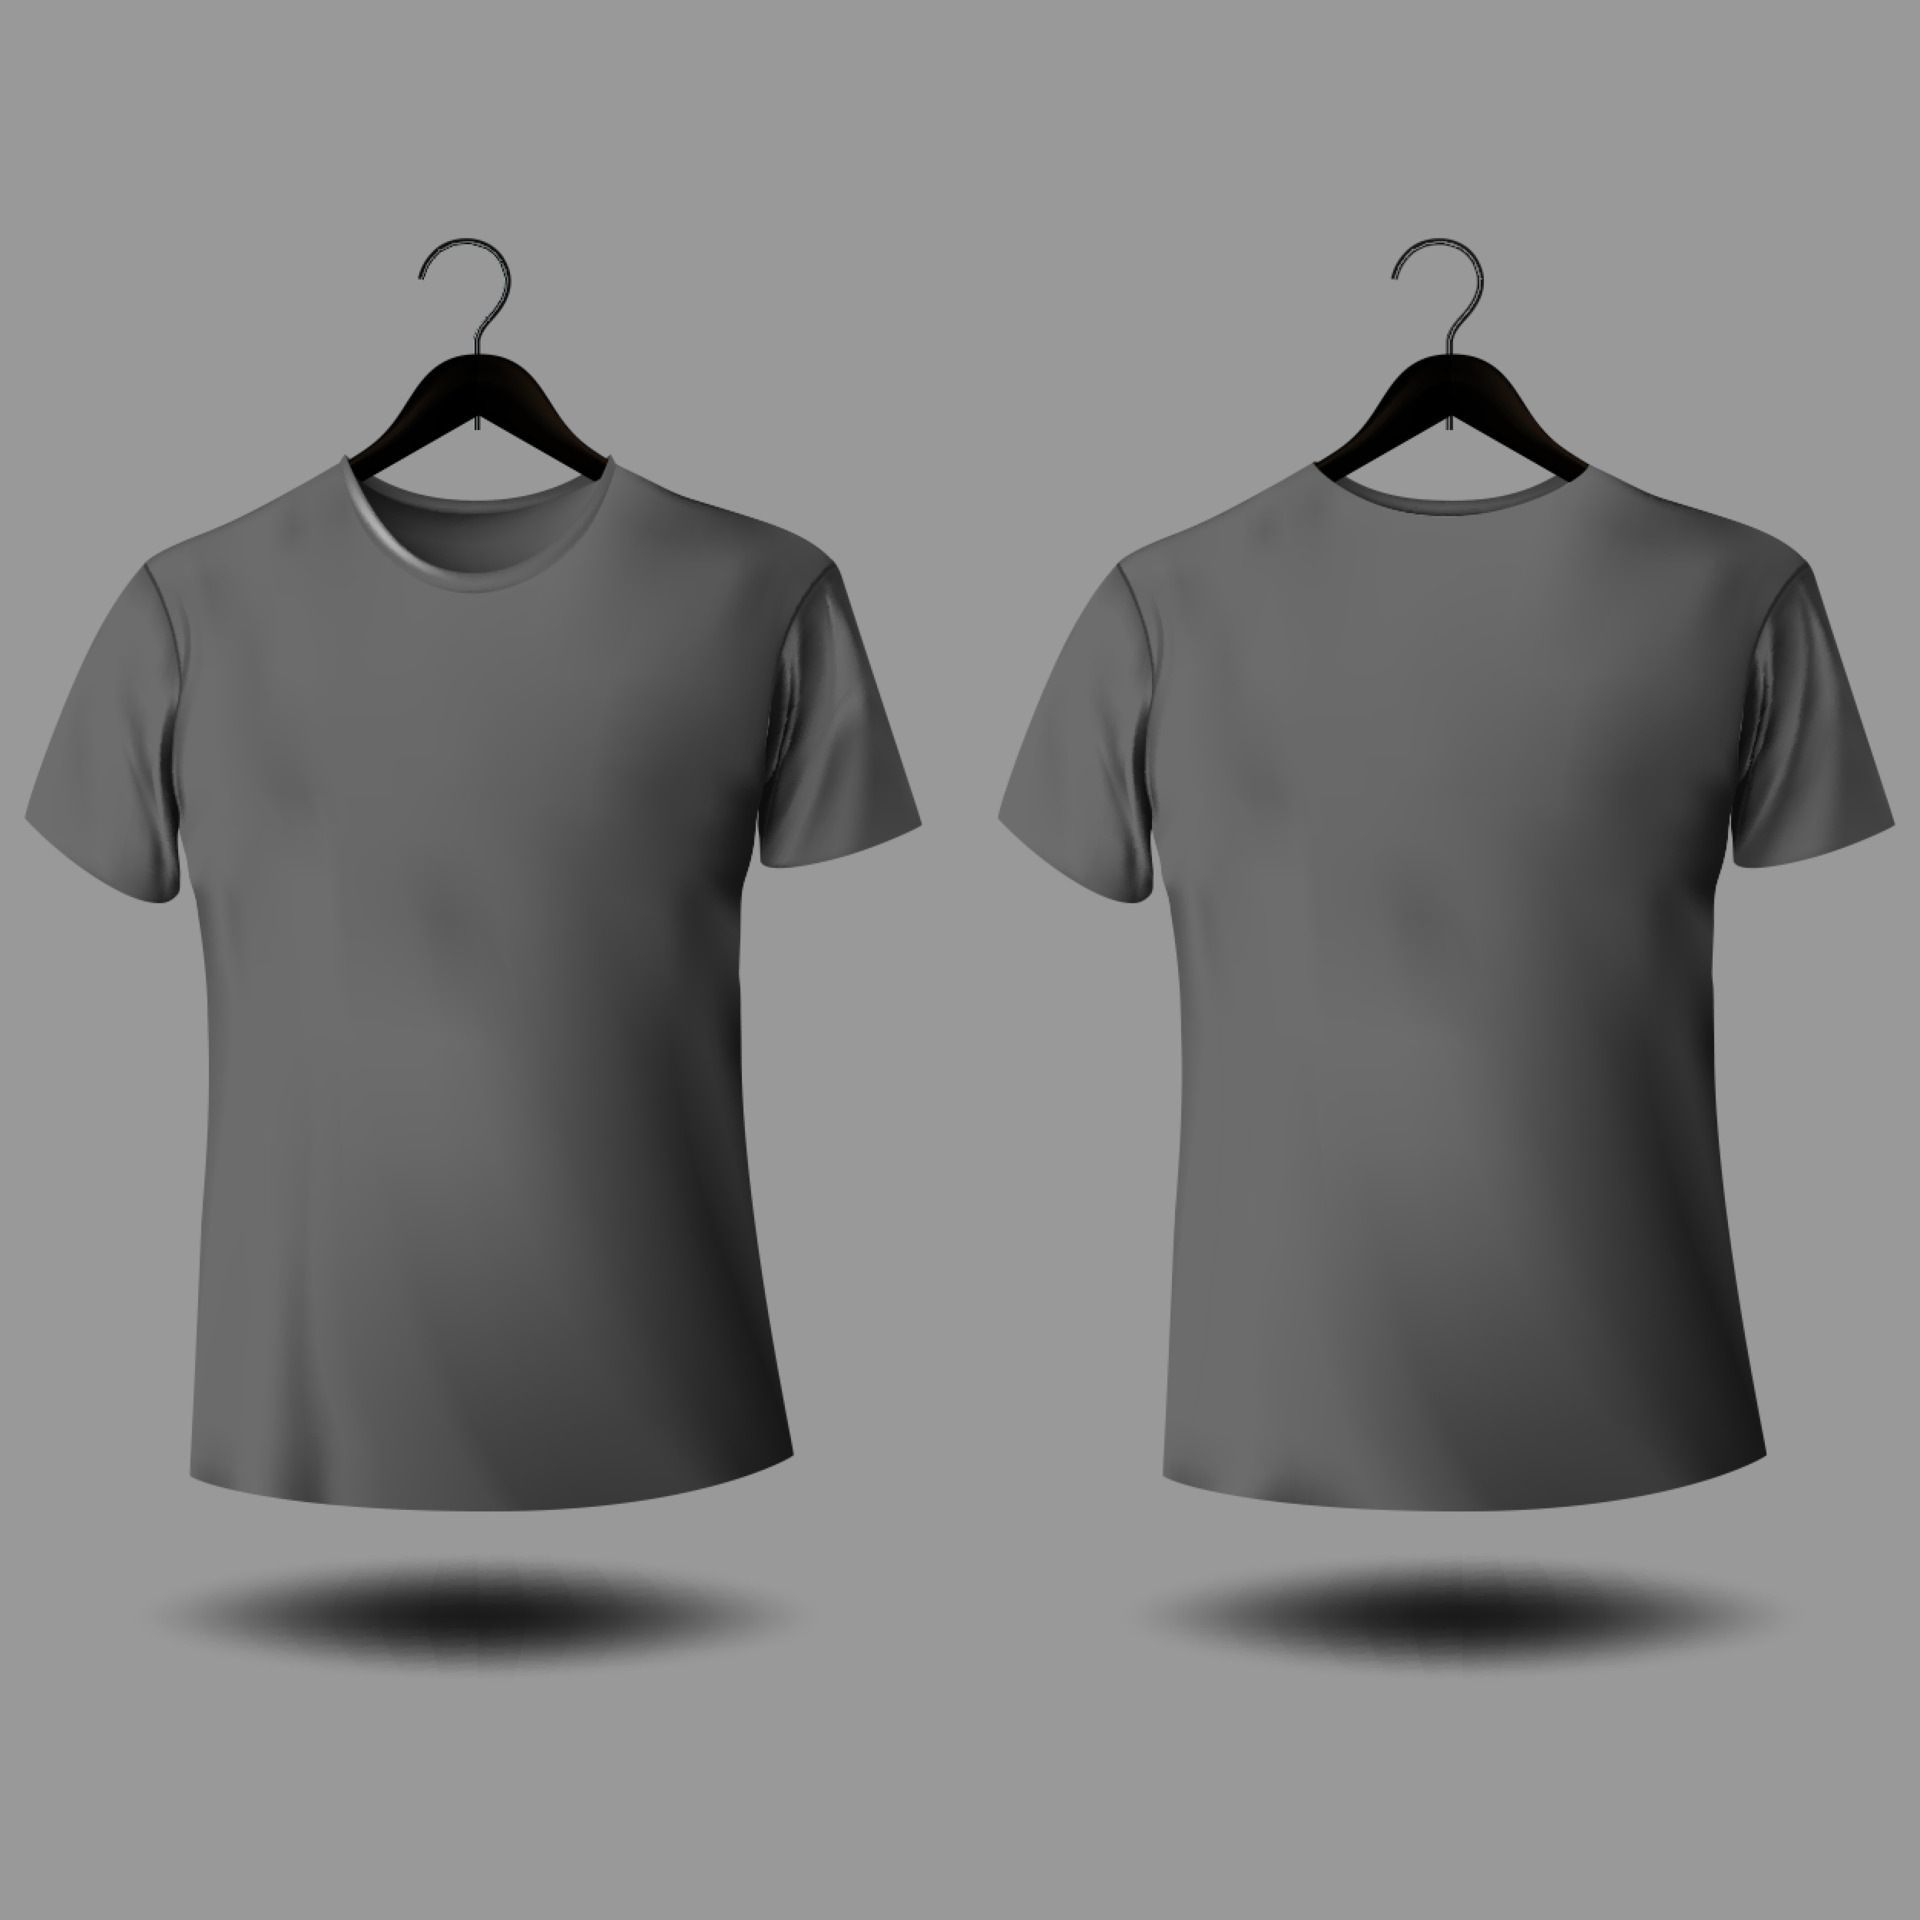 Grey T Shirt Mockup T Shirt With Short Sleeves Free Vector 11867977